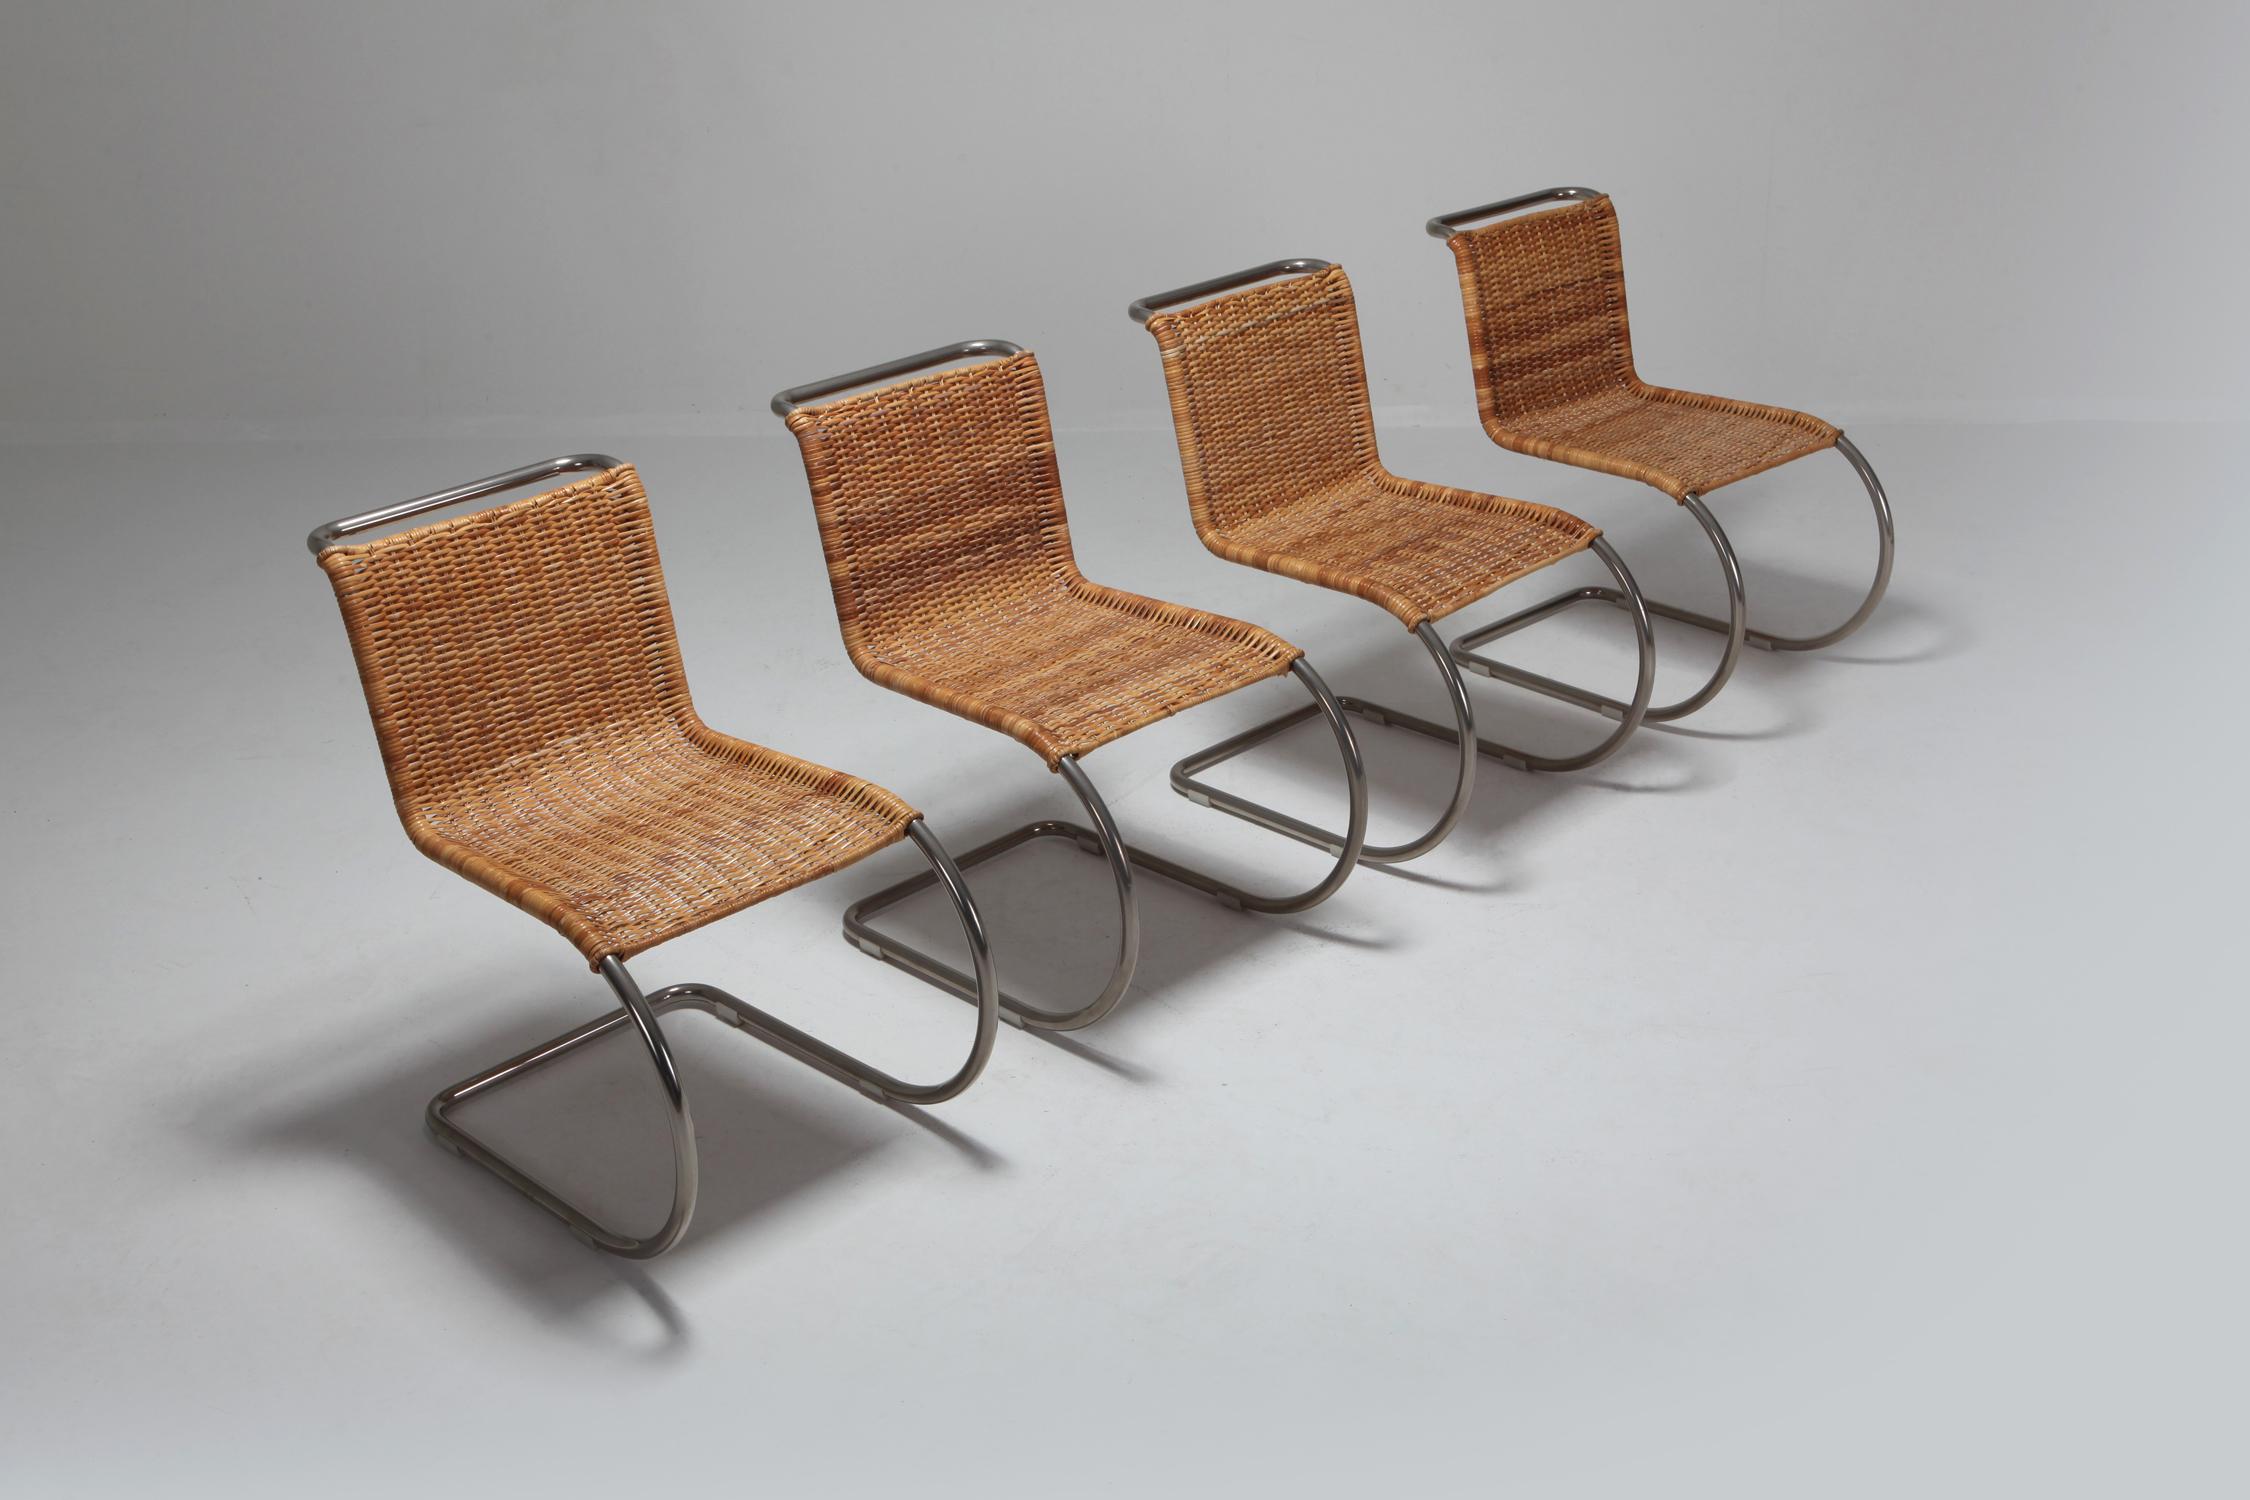 Mies van der Rohe Weissenhof Stuhl B42 von Tecta:: neue Sitzfläche aus Rohr und Gestell aus vernickeltem Stahl. 
entworfen 1927:: hergestellt 1982. 
